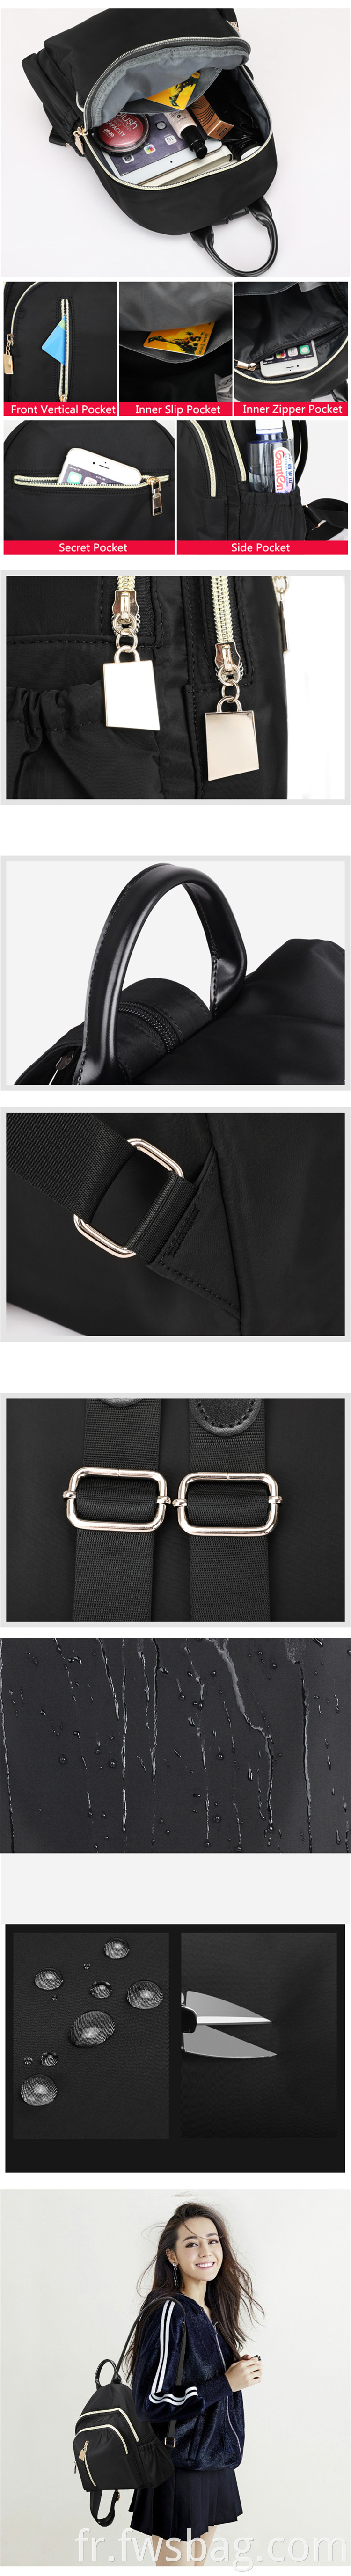 Poursier d'épaule en nylon étanche et imperméable Fashion Oxford Rucksack School College Mini Backpack décontracté